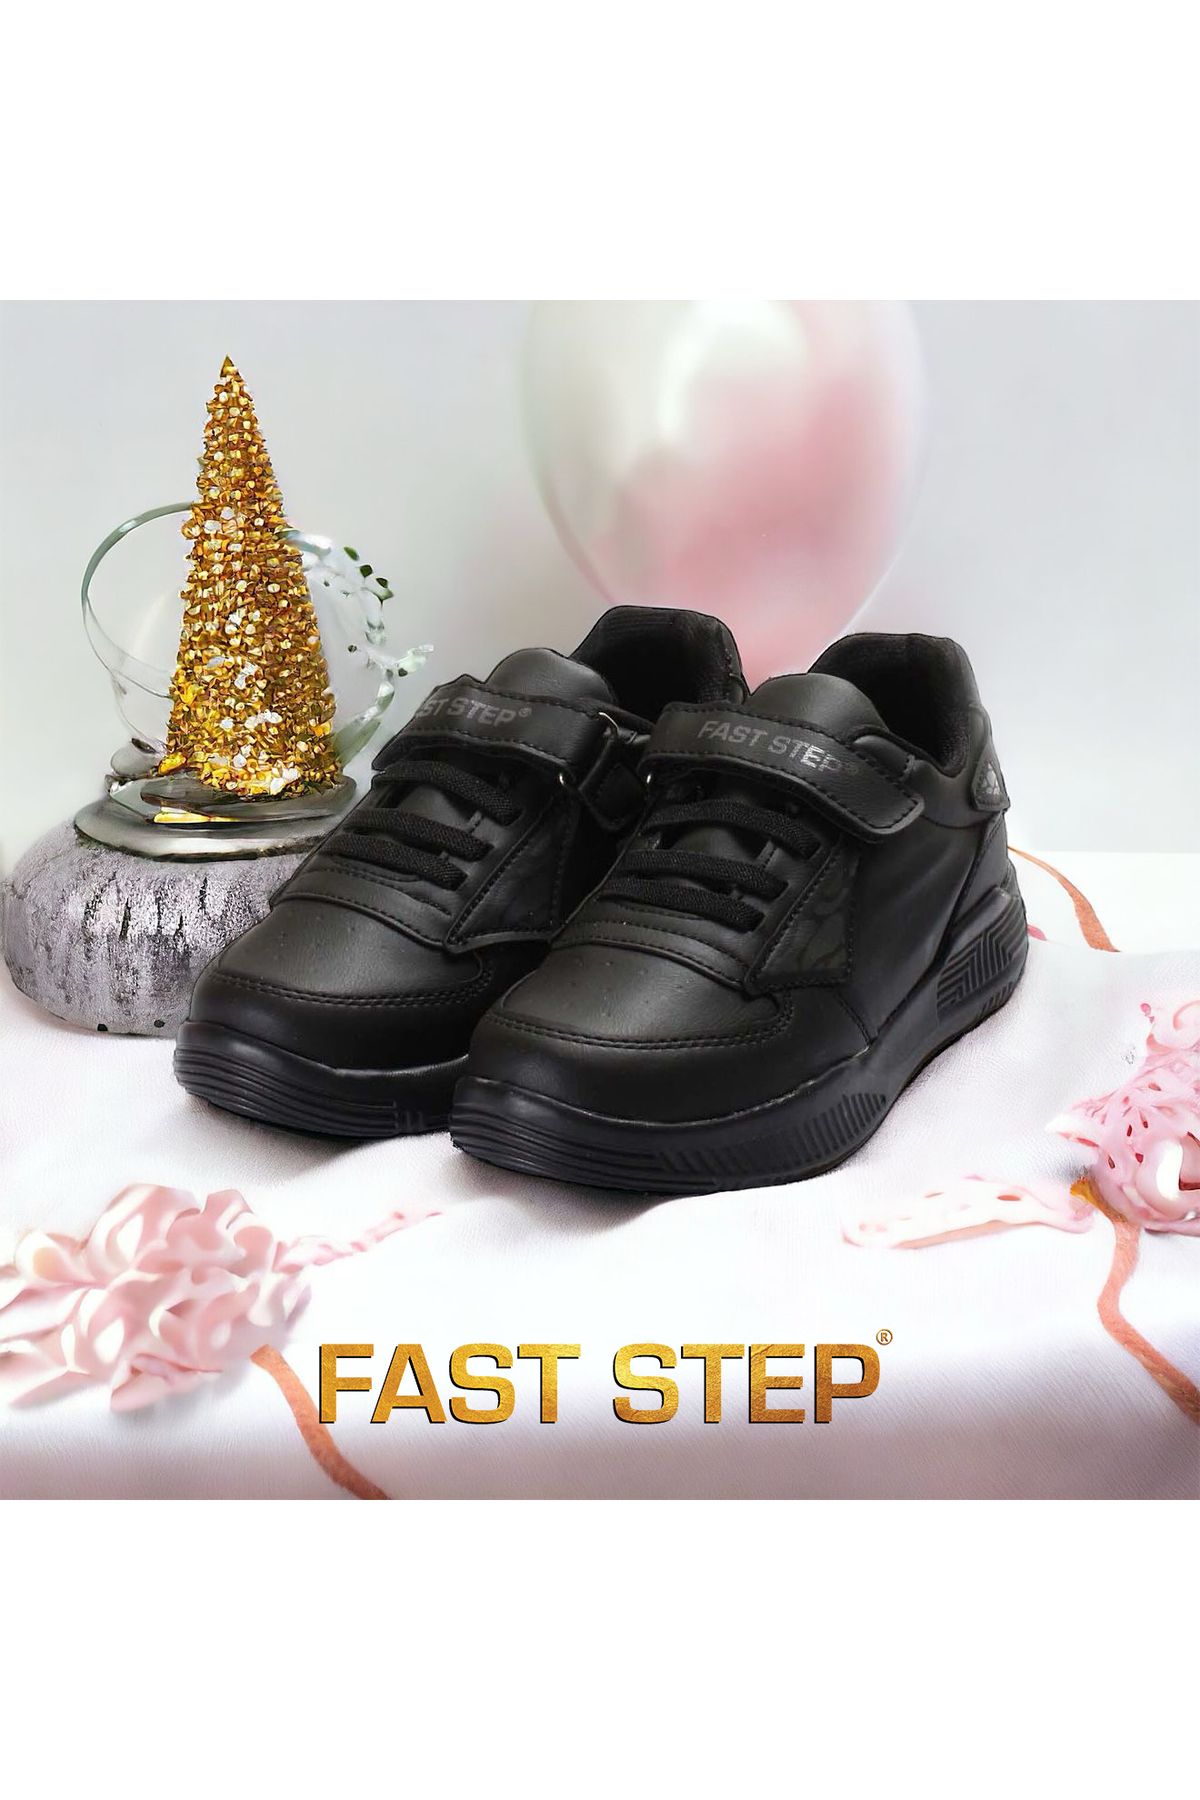 Fast Step Unisex Çocuk Spor Yumuşak Taban Hafif Yazlık Sneaker Ayakkabı 615fa110